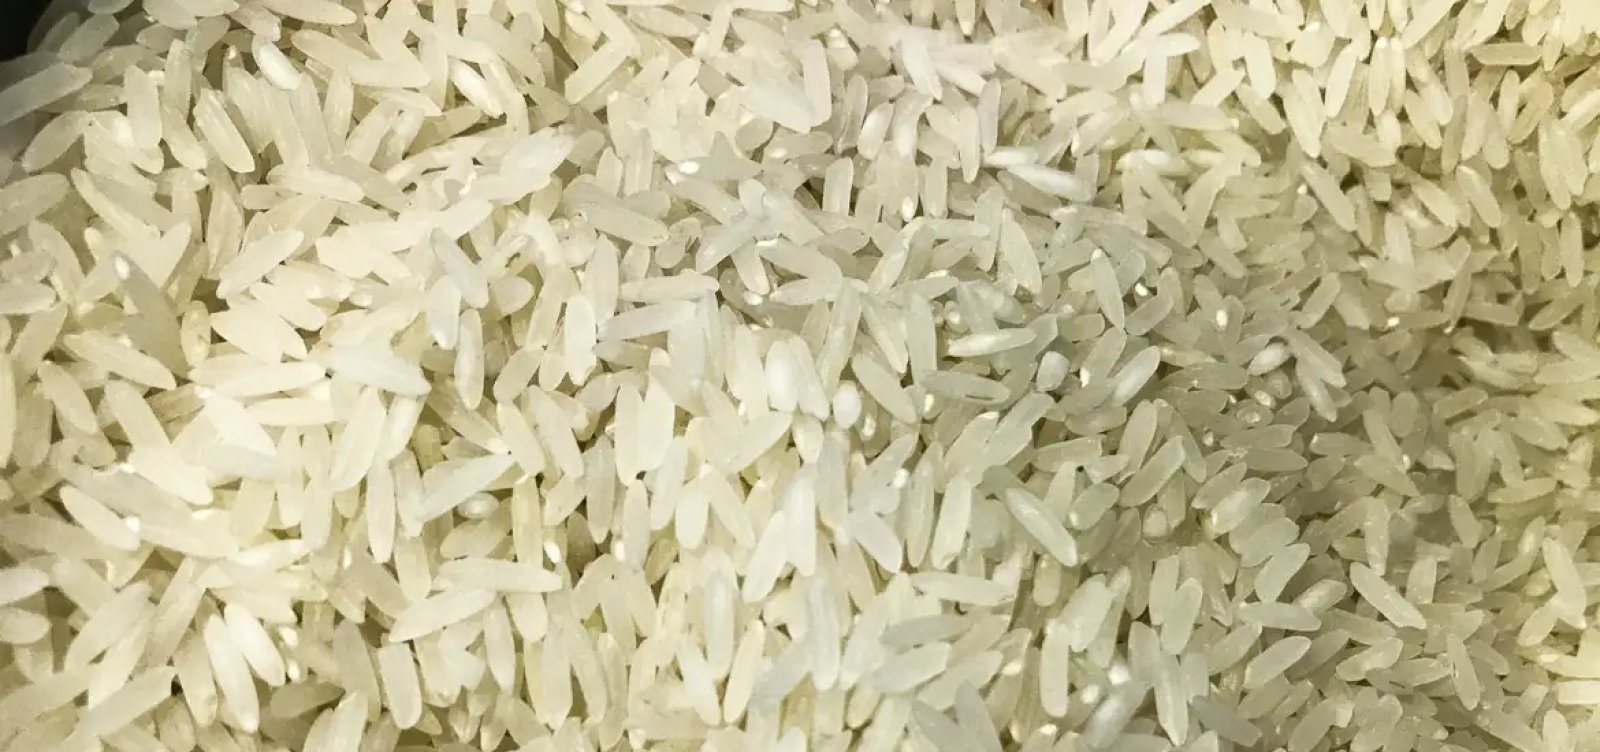 Governo destina R$ 6,7 bilhões para compra de arroz importado